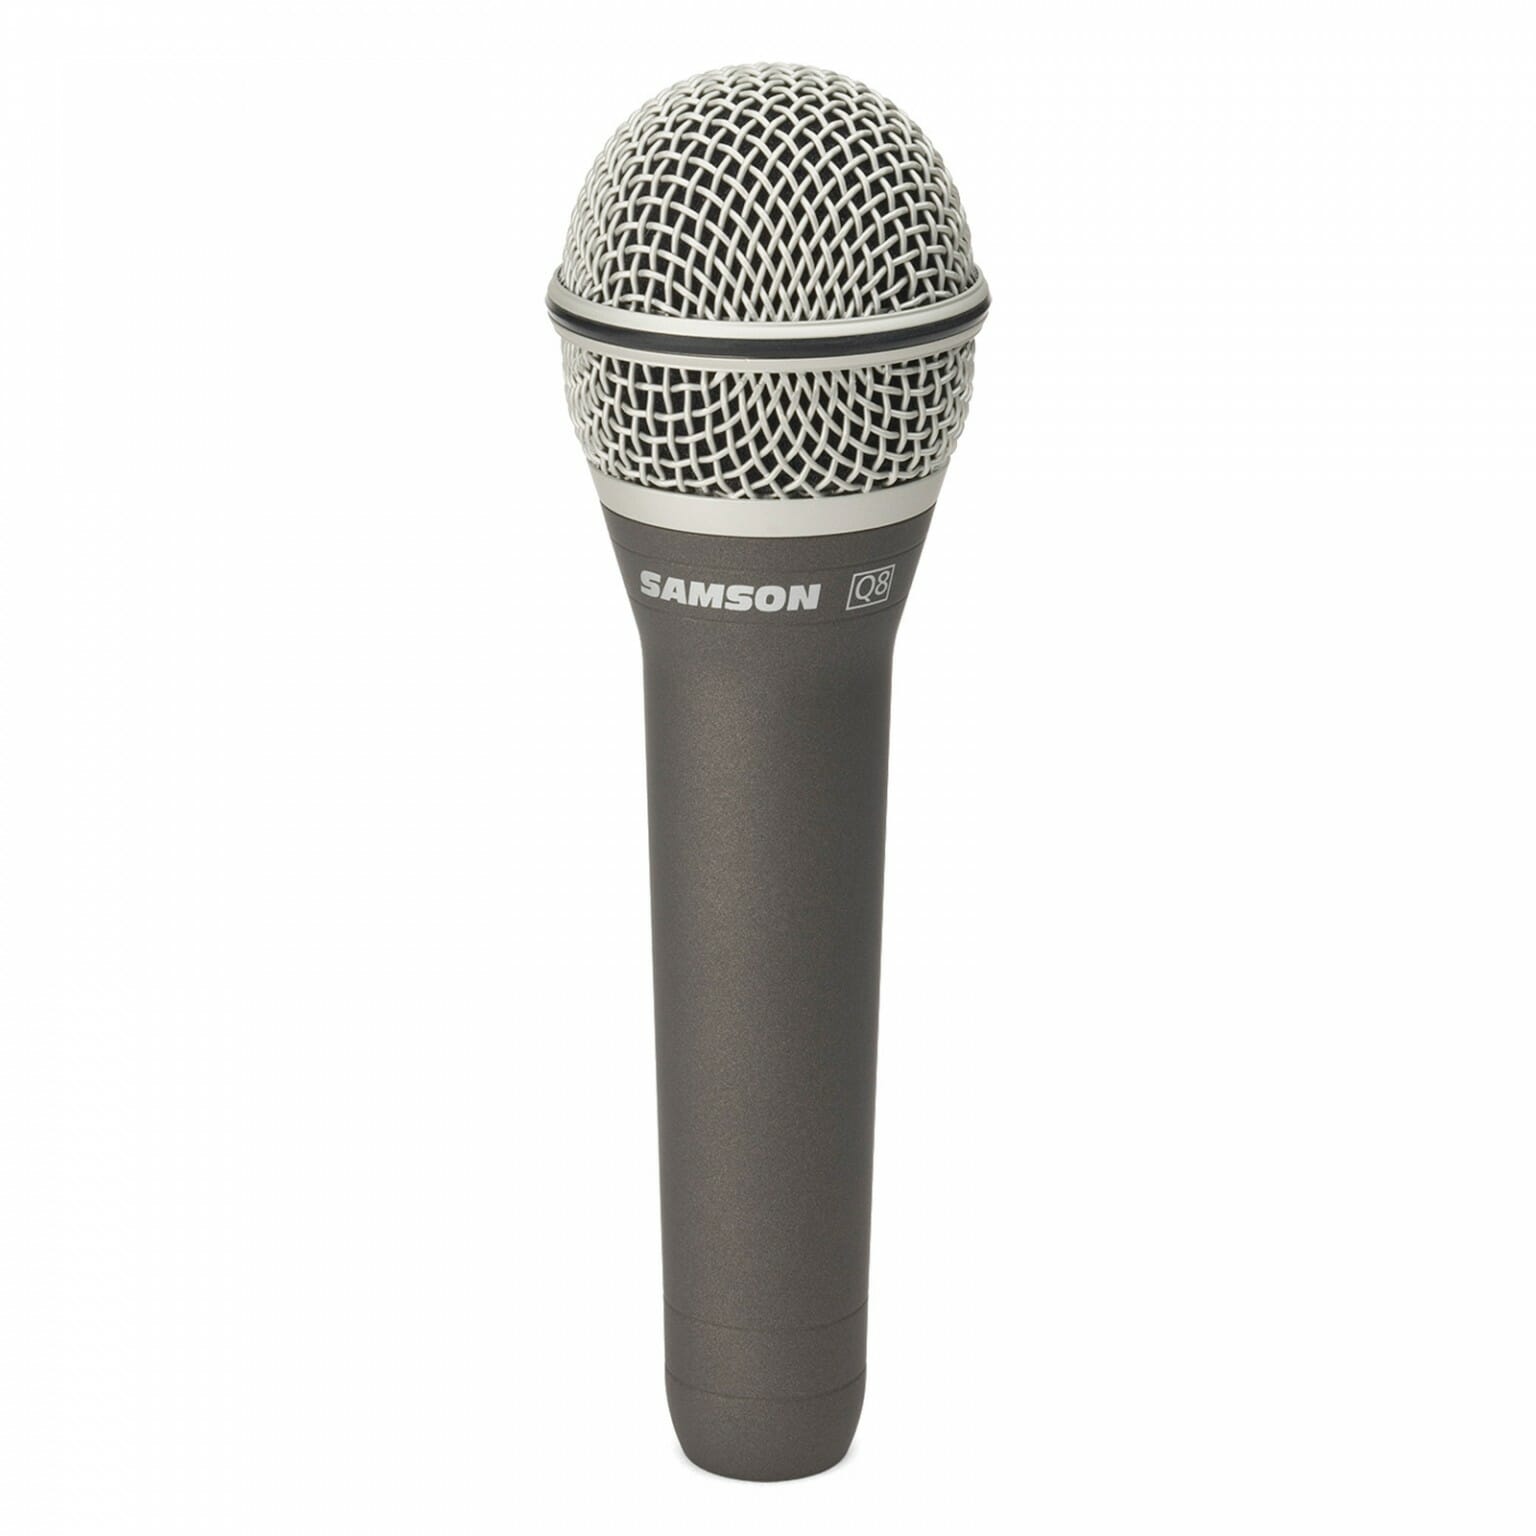 N voice. Микрофон Behringer SB 78a. Electro Voice микрофон. Беренджер конденсаторный микрофон. Микрофон Electro-Voice n/d868.